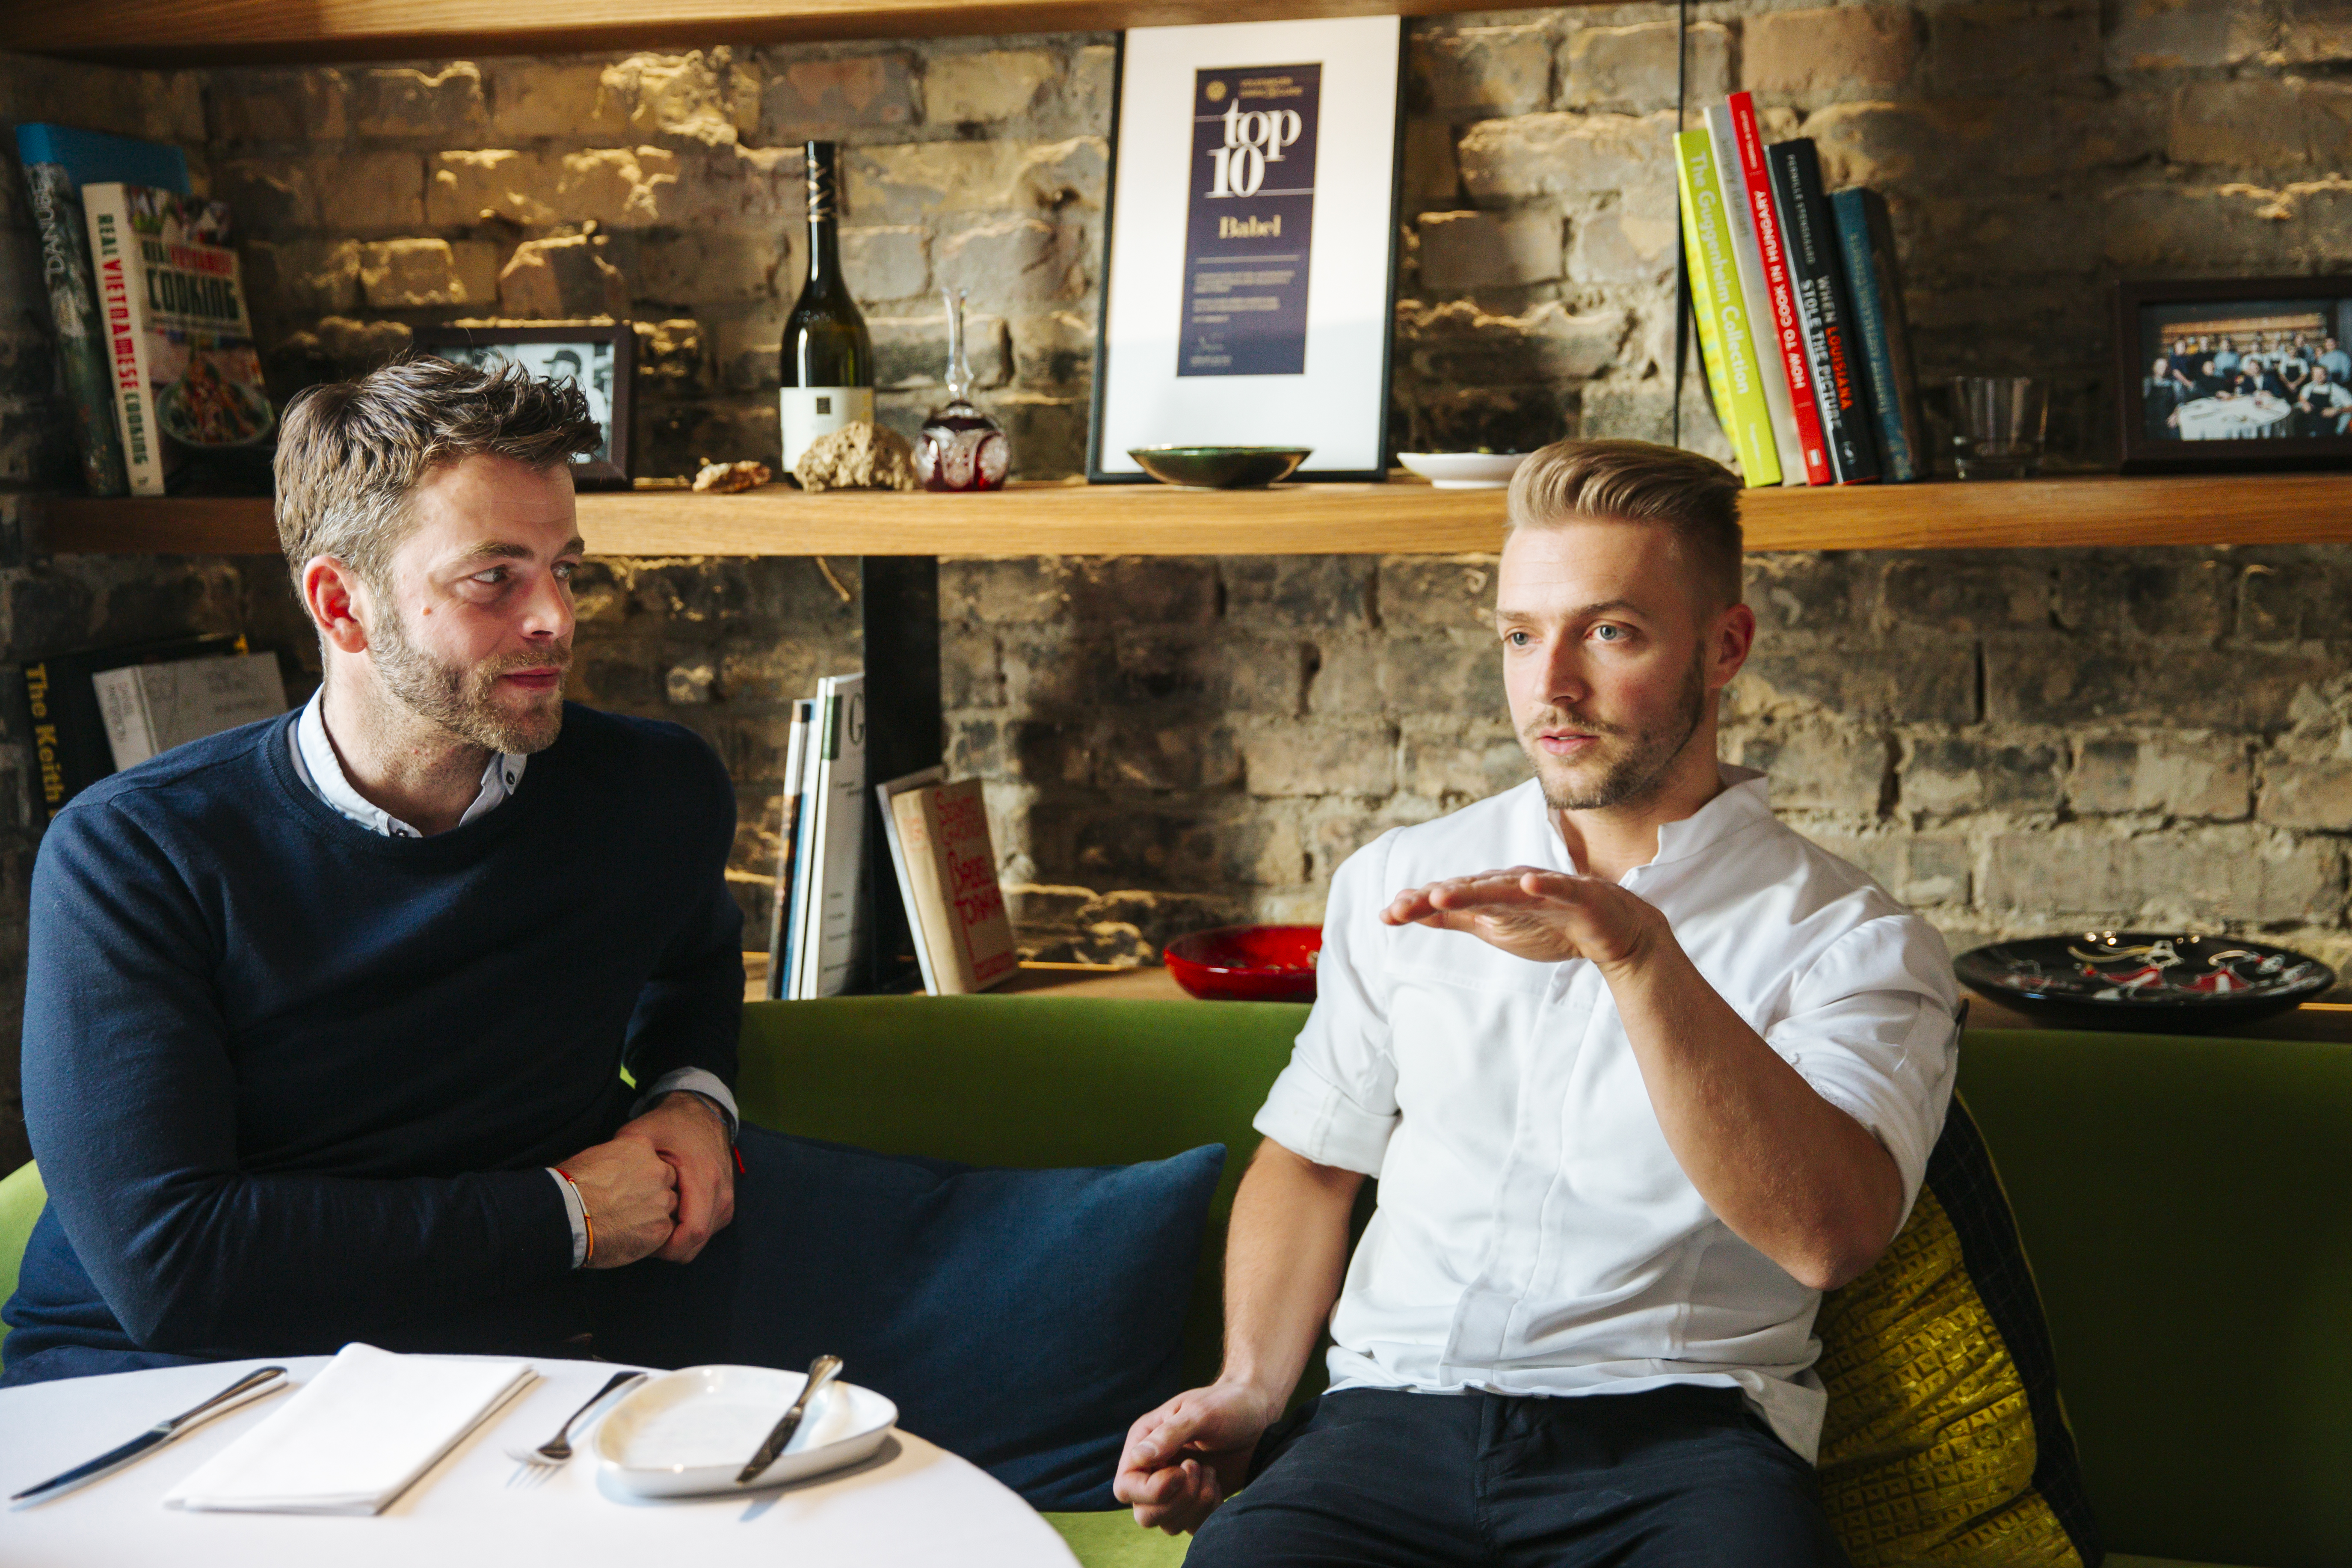 „Mindketten kicsit bükfejesek vagyunk” – beszélgetés Hlatky-Schlichter Huberttel és Veres Istvánnal a friss Michelin-csillagos Babelről